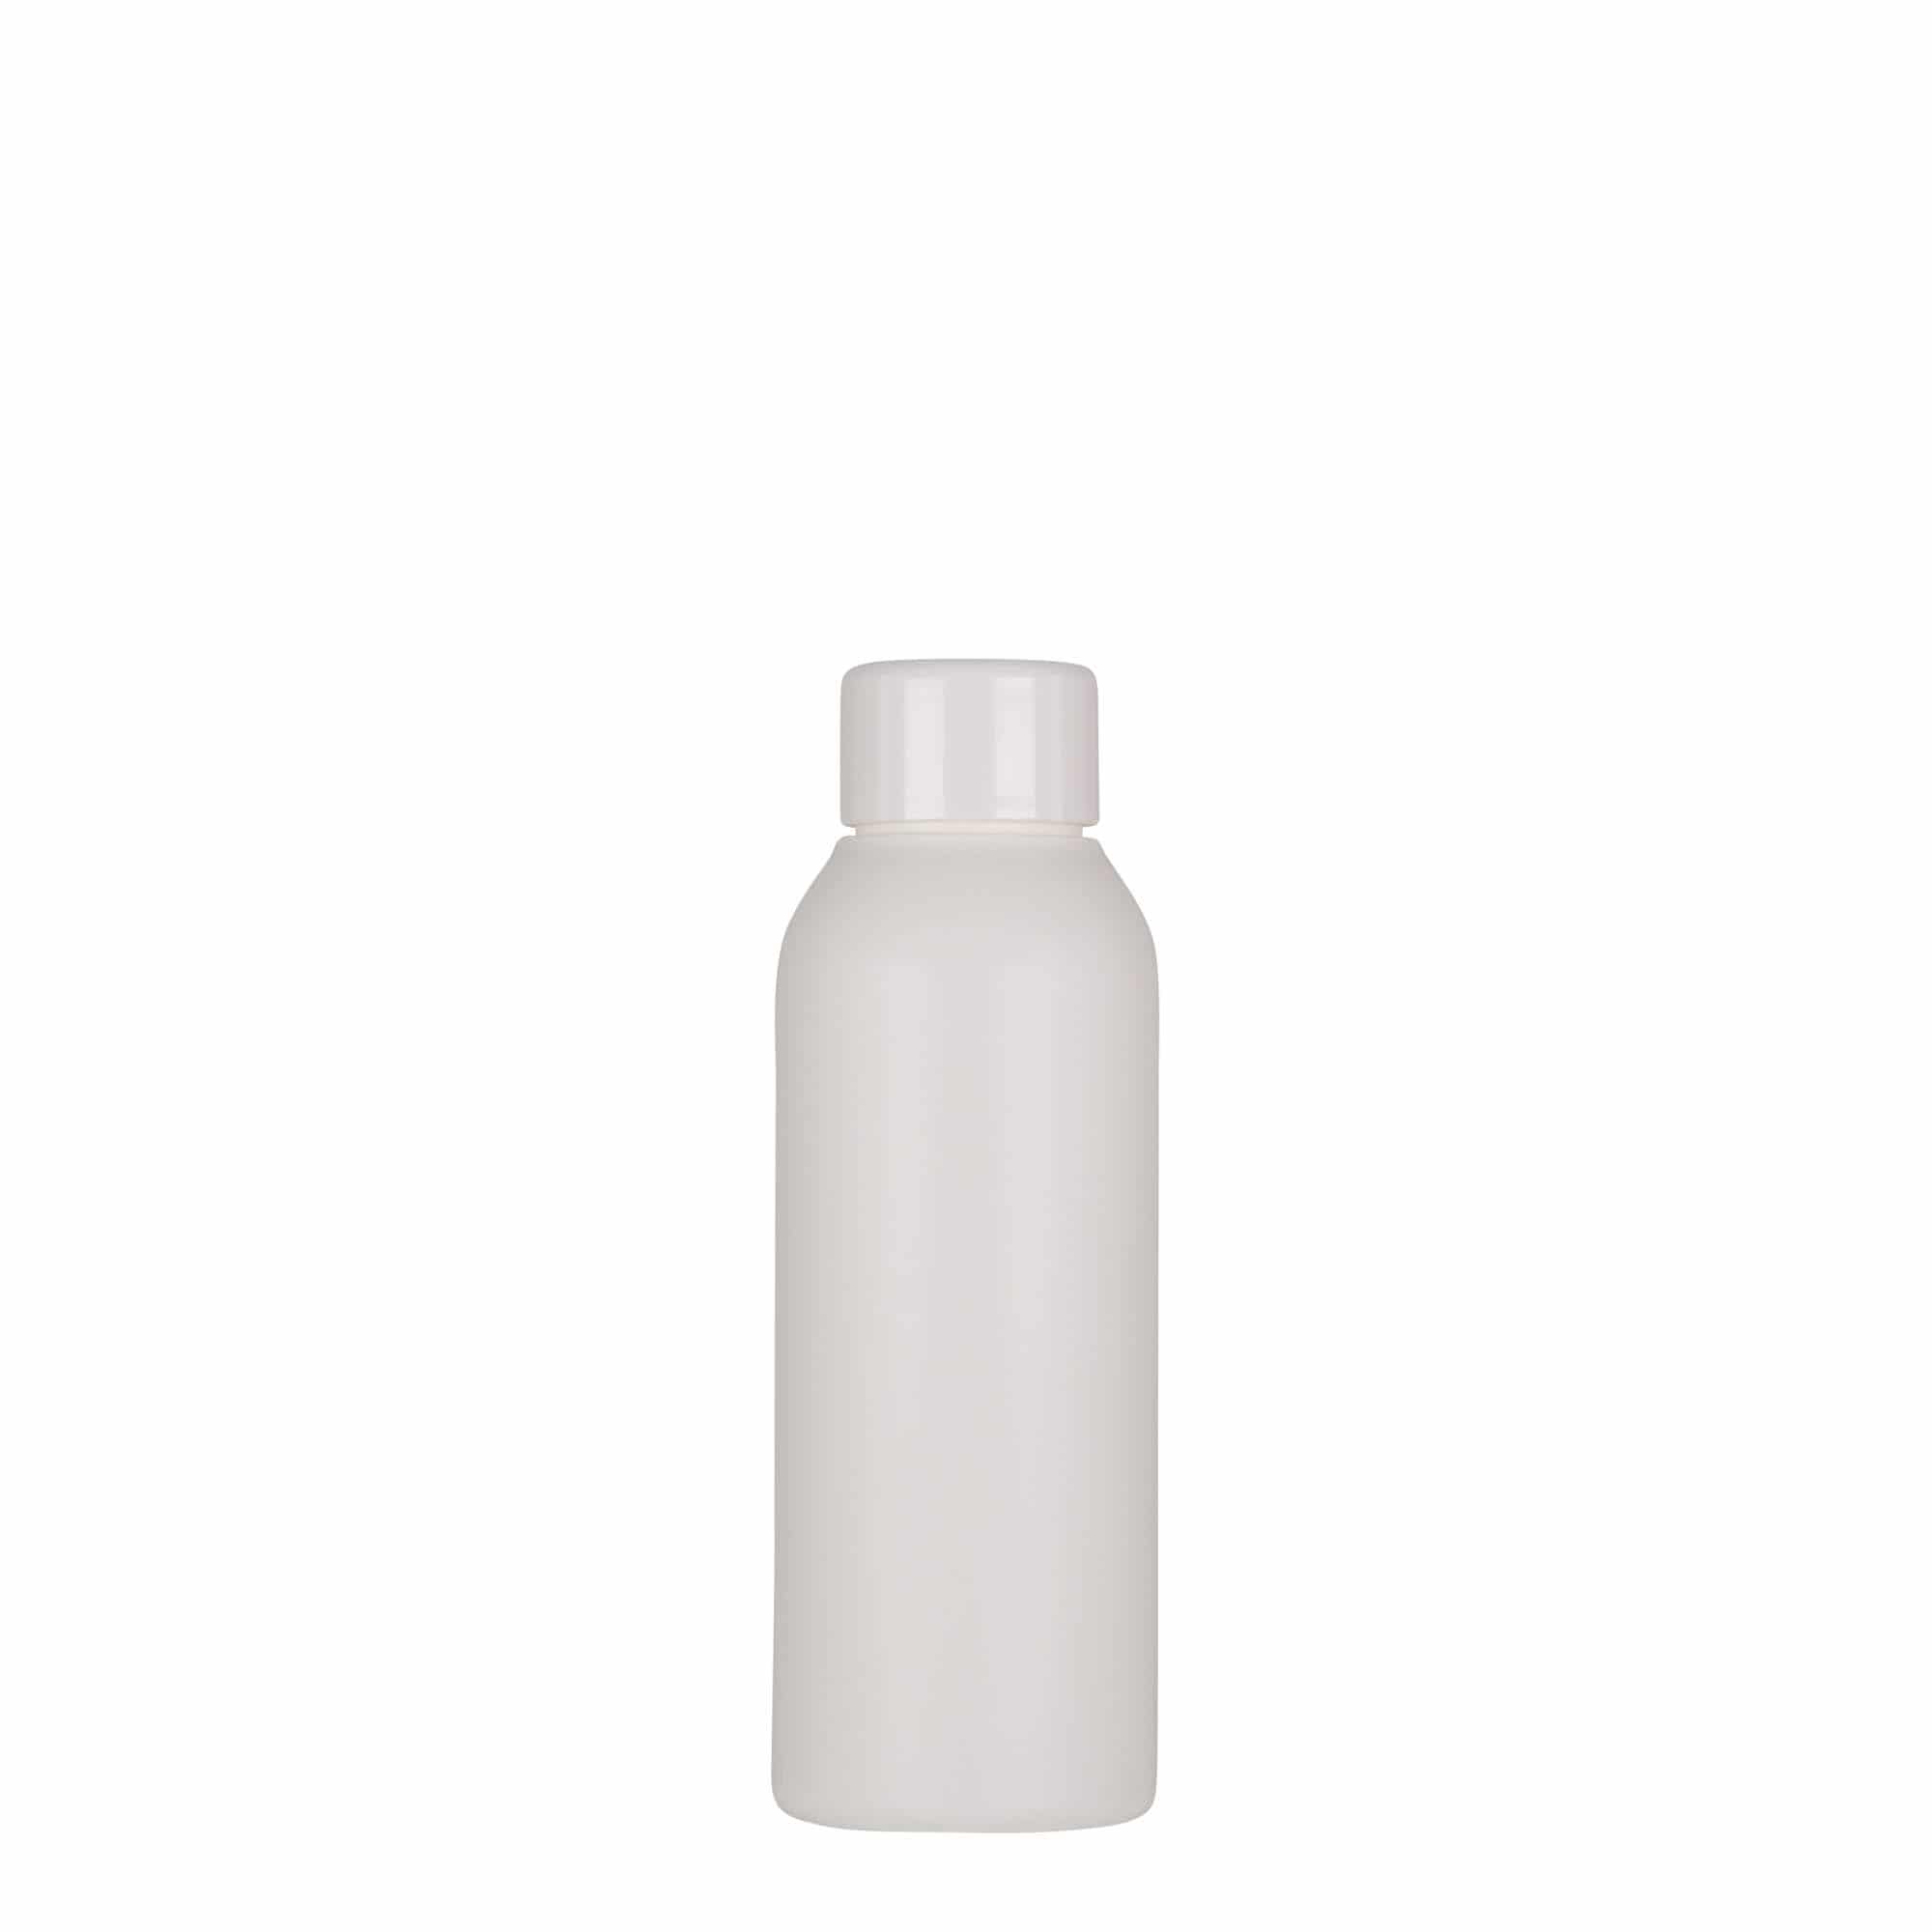 100 ml plastic bottle 'Tuffy', HDPE, white, closure: GPI 24/410